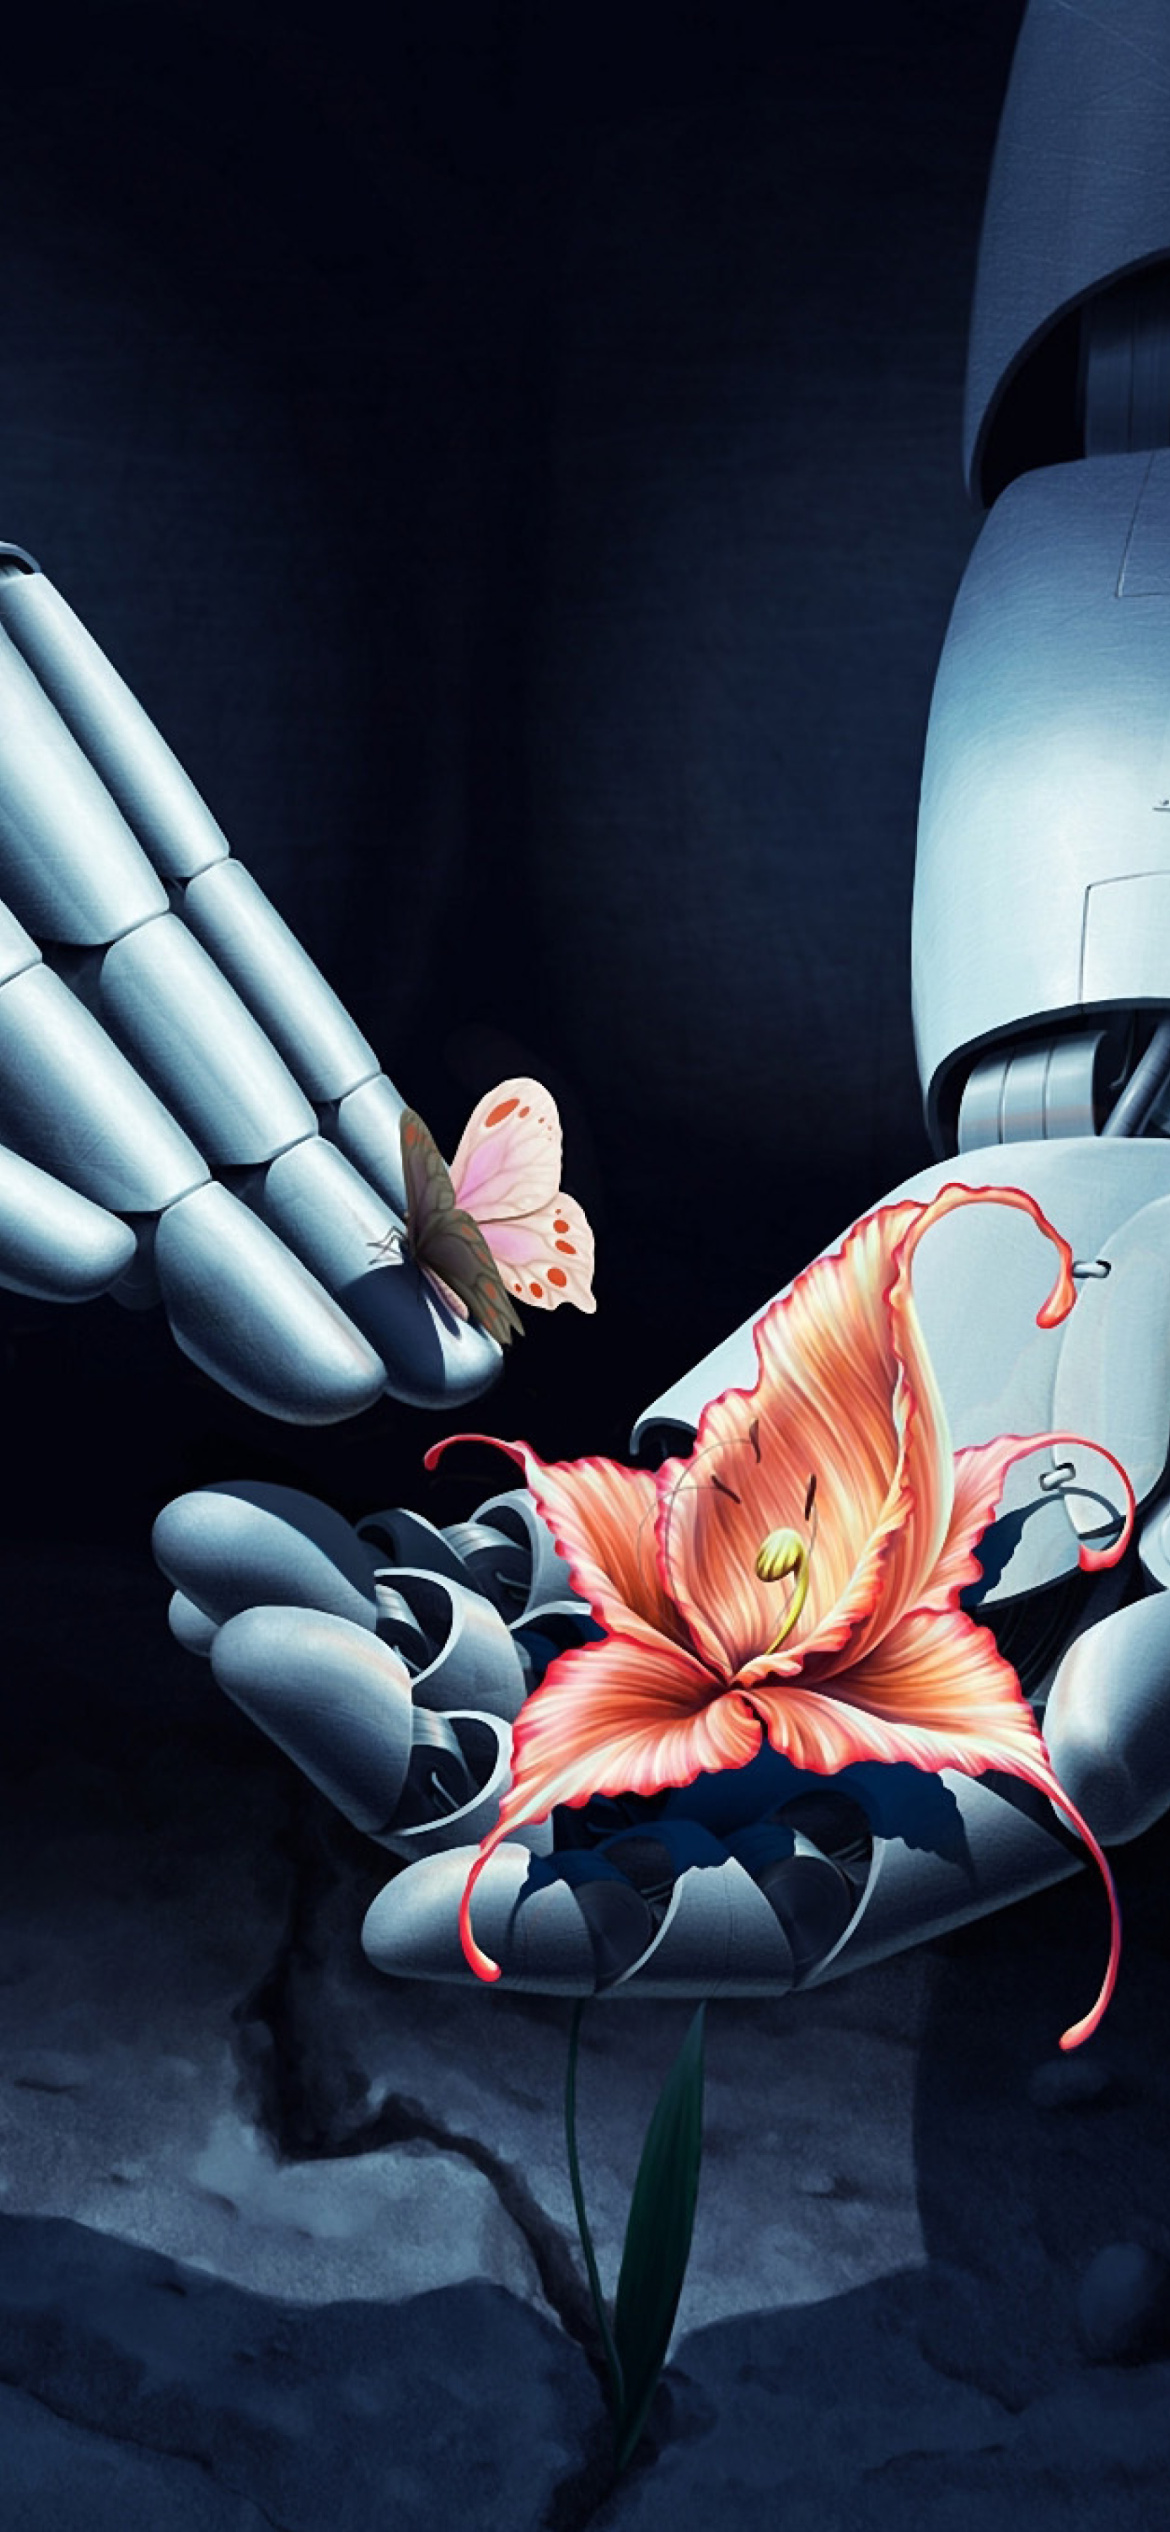 Art Robot Hand with Flower screenshot #1 1170x2532